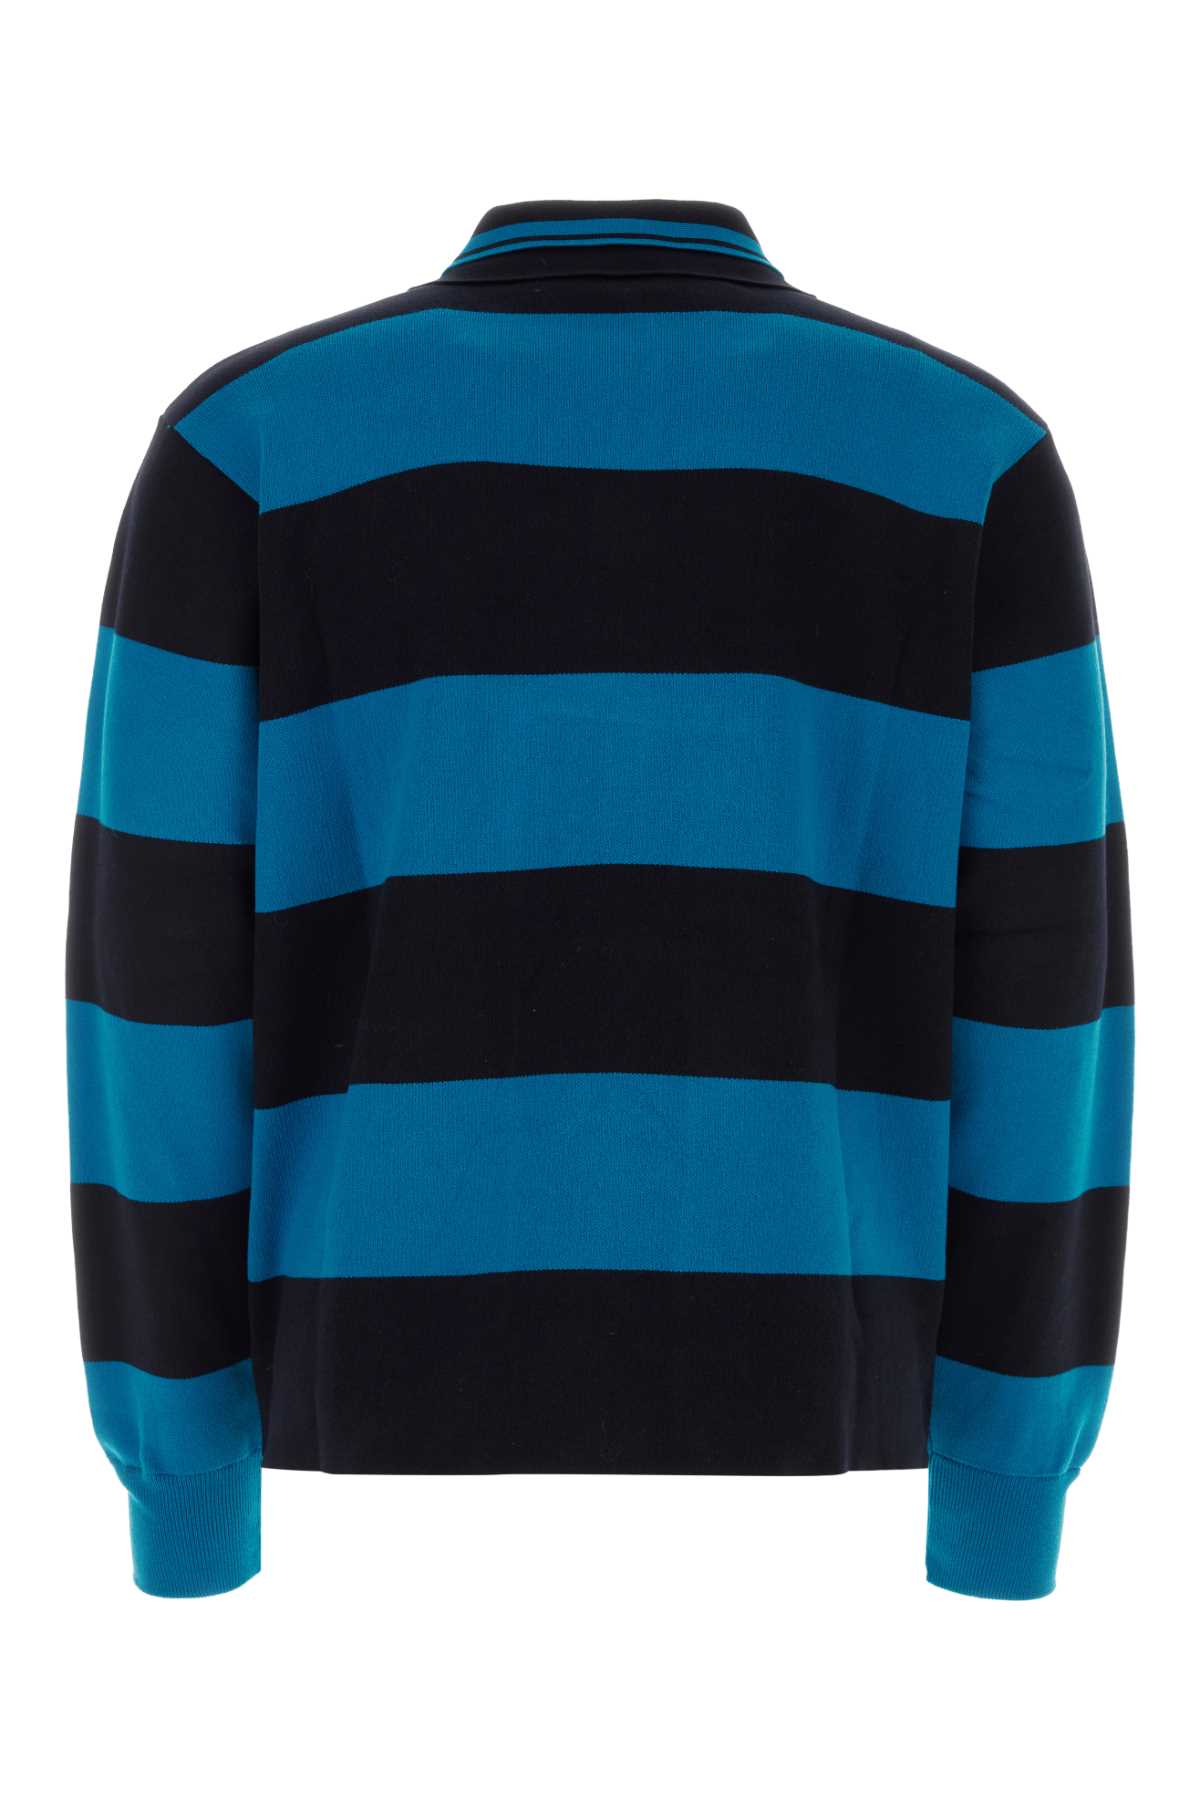 Botter Two-tone Cotton Sweatshirt In  Blue Dark Navy Stripe